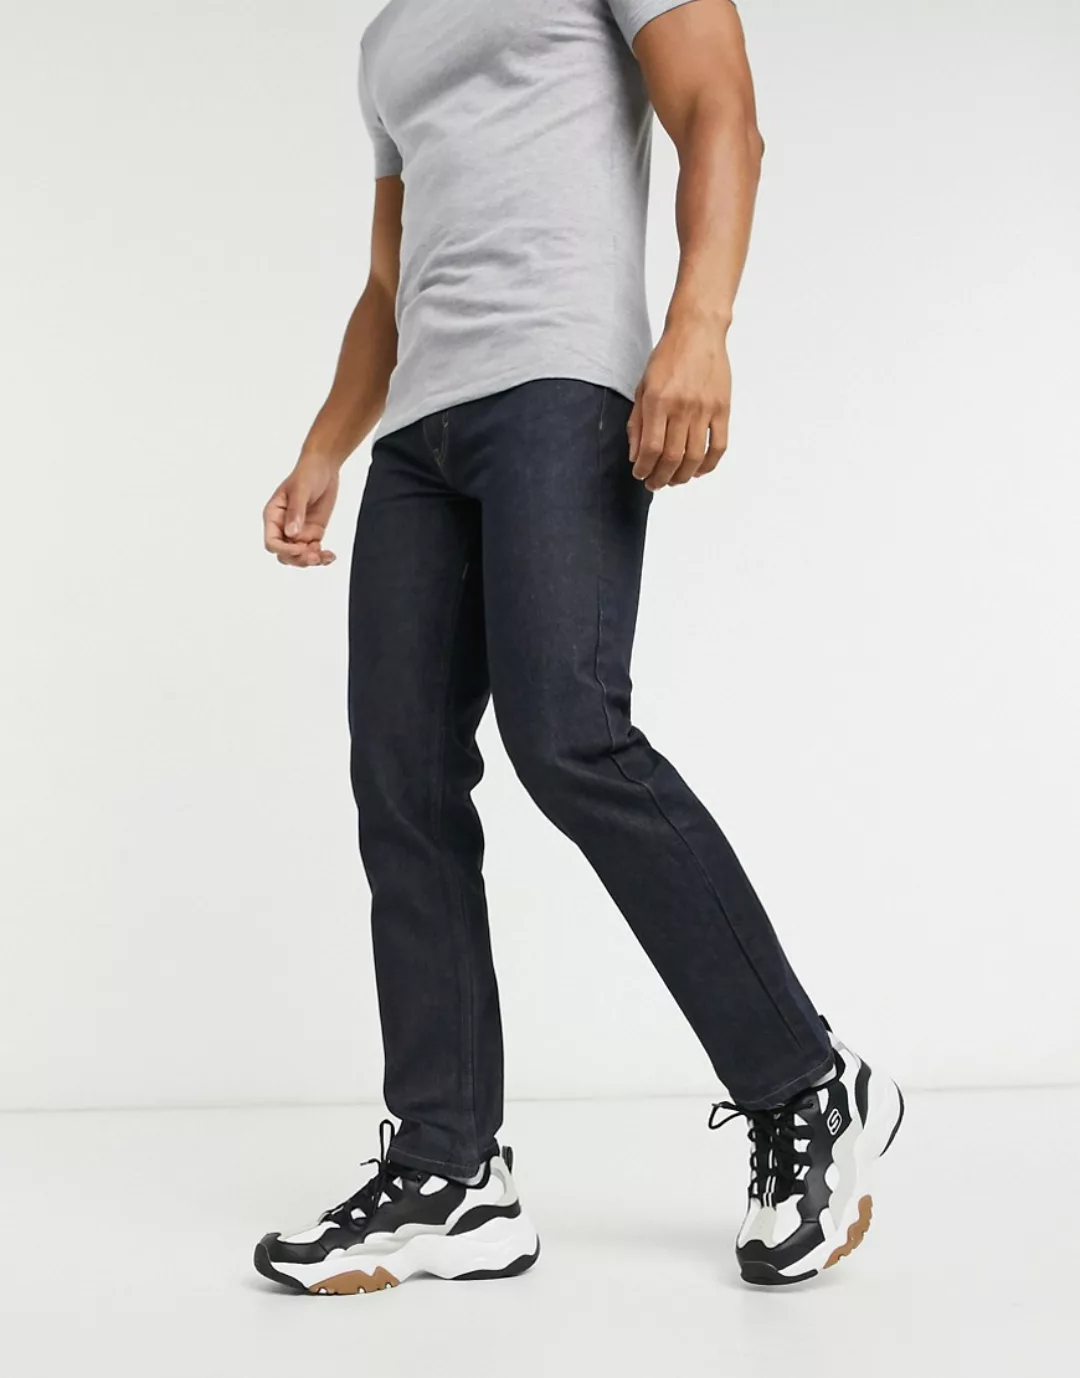 Levi's Skateboarding – 511 – Schmale Jeans mit 5 Taschen in Indigo-Blau günstig online kaufen